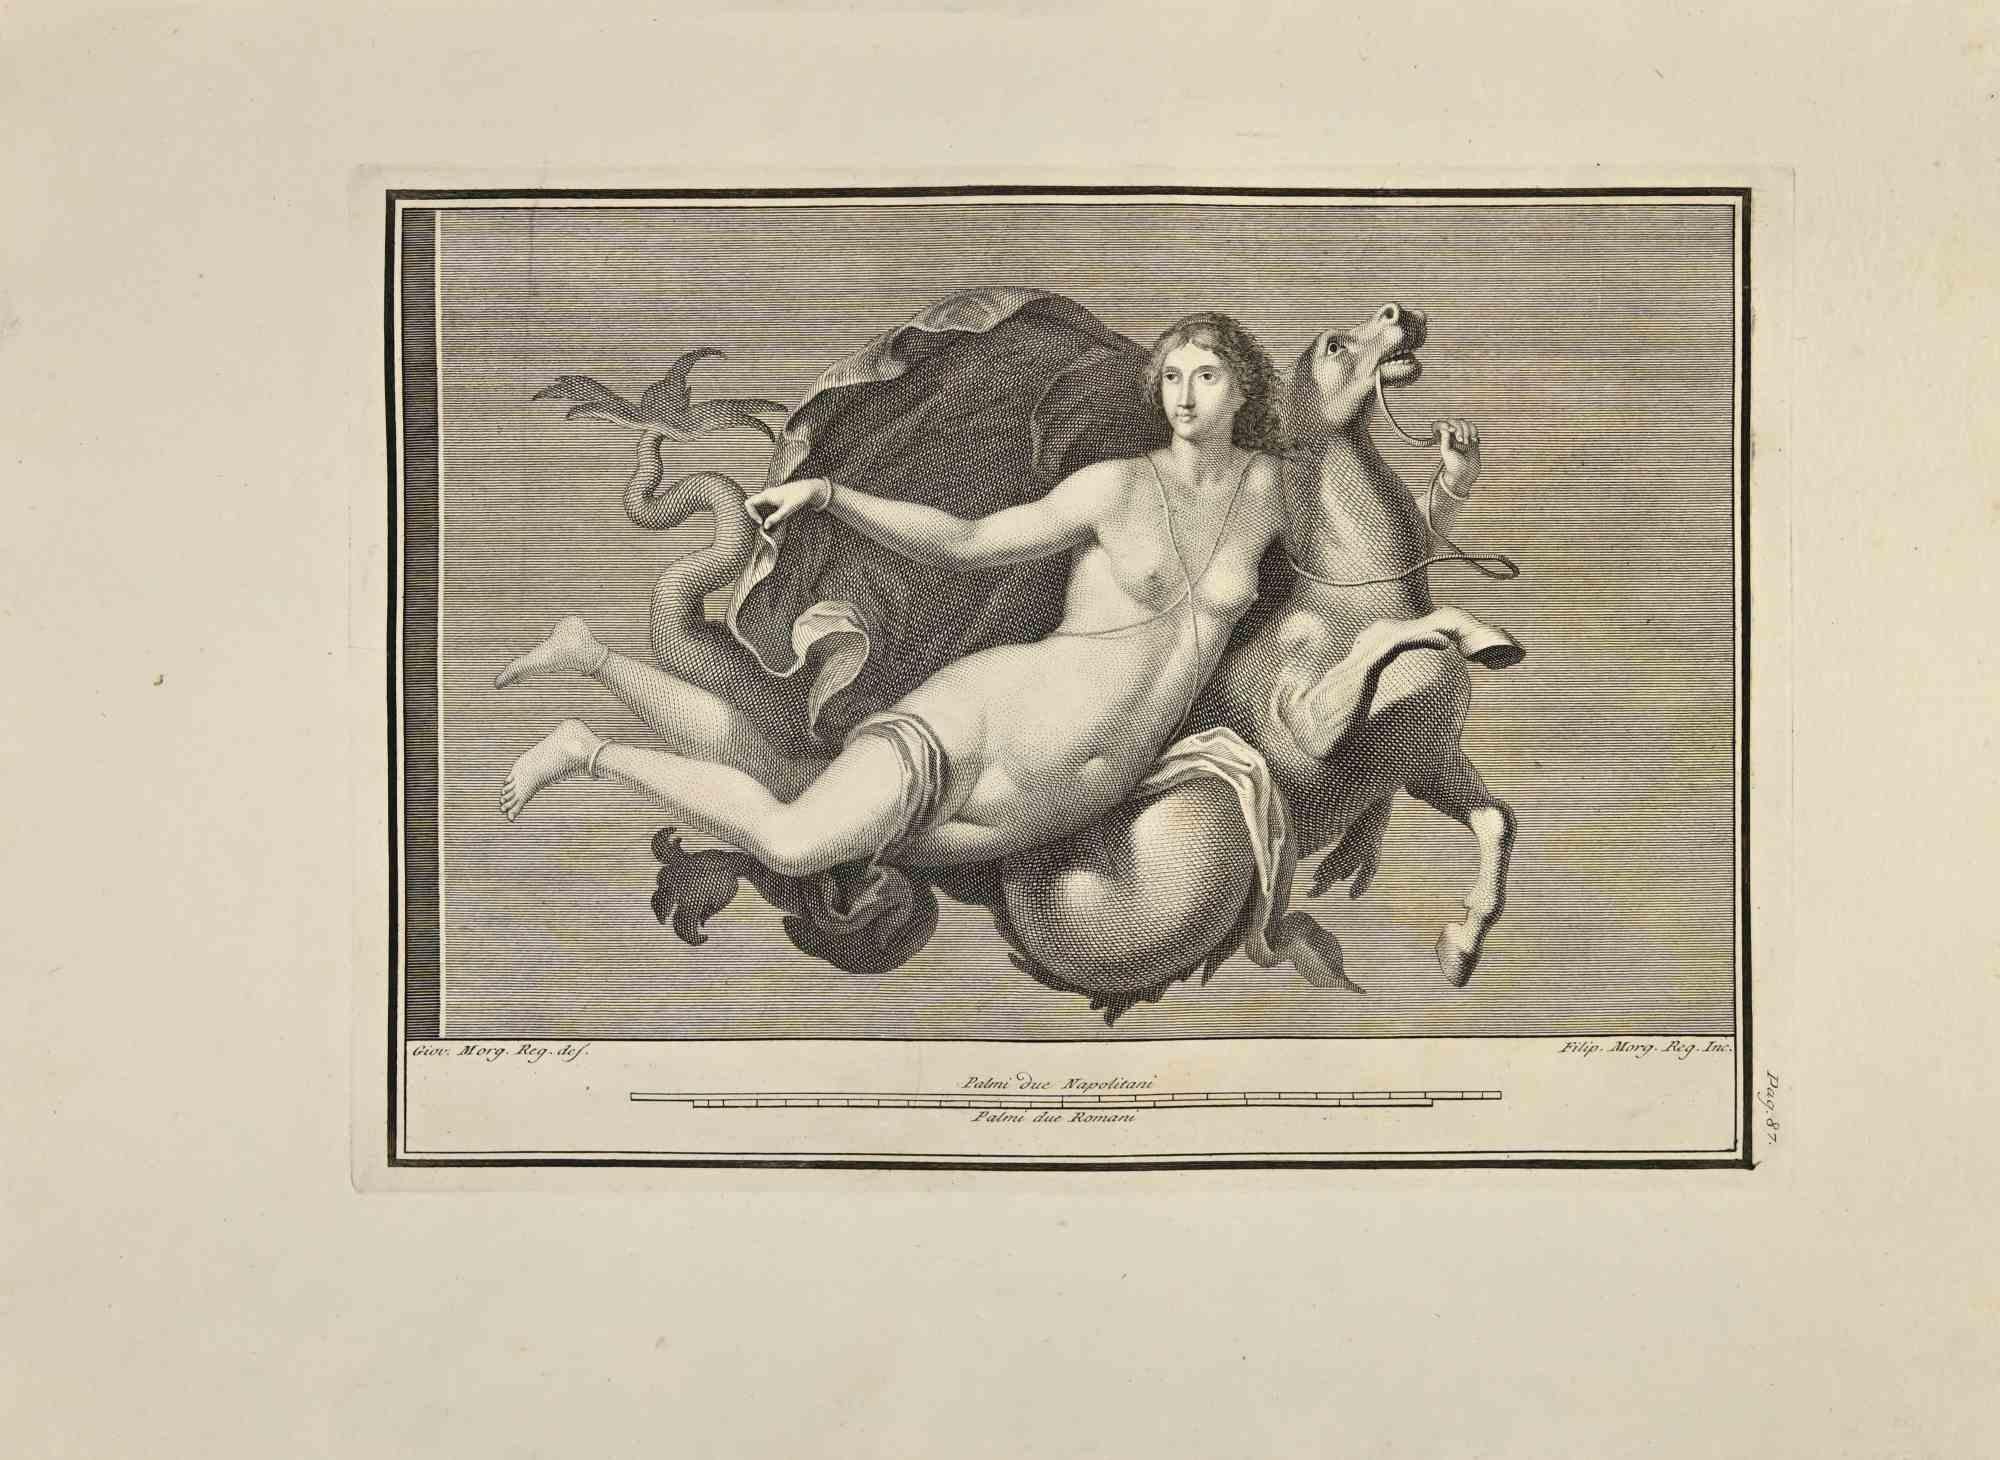 Déesse Vénus avec cheval des "Antiquités d'Herculanum" est une gravure sur papier réalisée par Filippo Morghen au 18ème siècle.

Signé sur la plaque.

Bon état avec quelques pliures.

La gravure appartient à la suite d'estampes "Antiquités